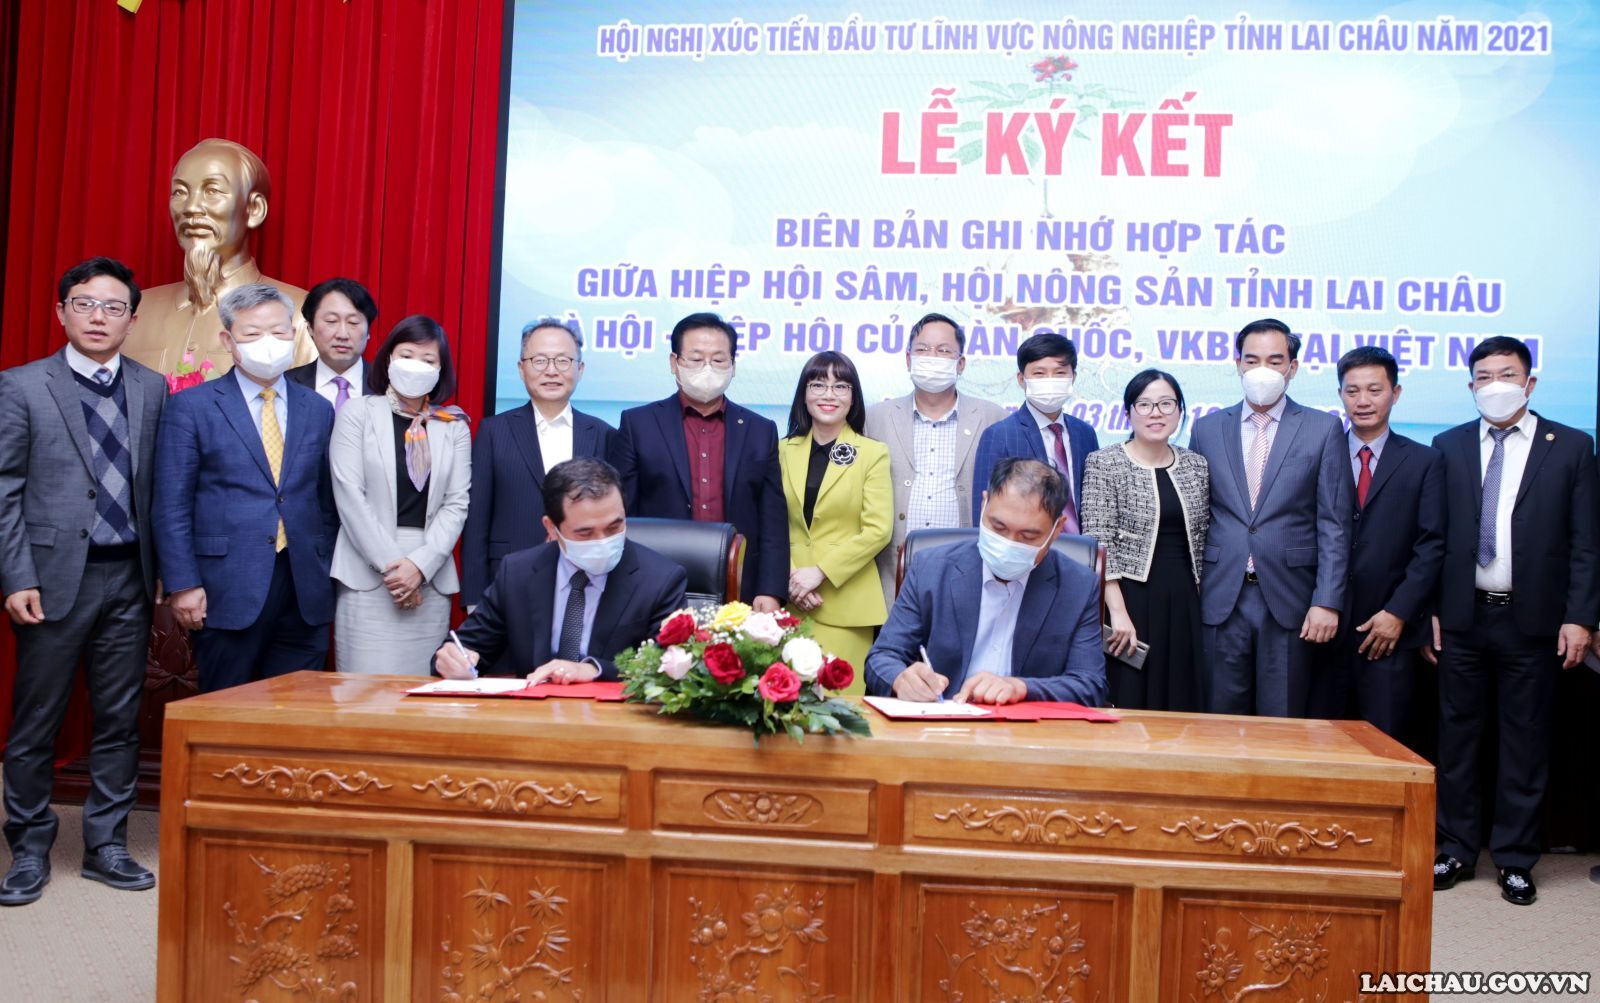 Tọa đàm xúc tiến đầu tư giữa Hiệp hội Sâm, Hội nông sản tỉnh Lai Châu và Hội – Hiệp hội của Hàn Quốc, VKBIA tại Việt Nam - Ảnh minh hoạ 8